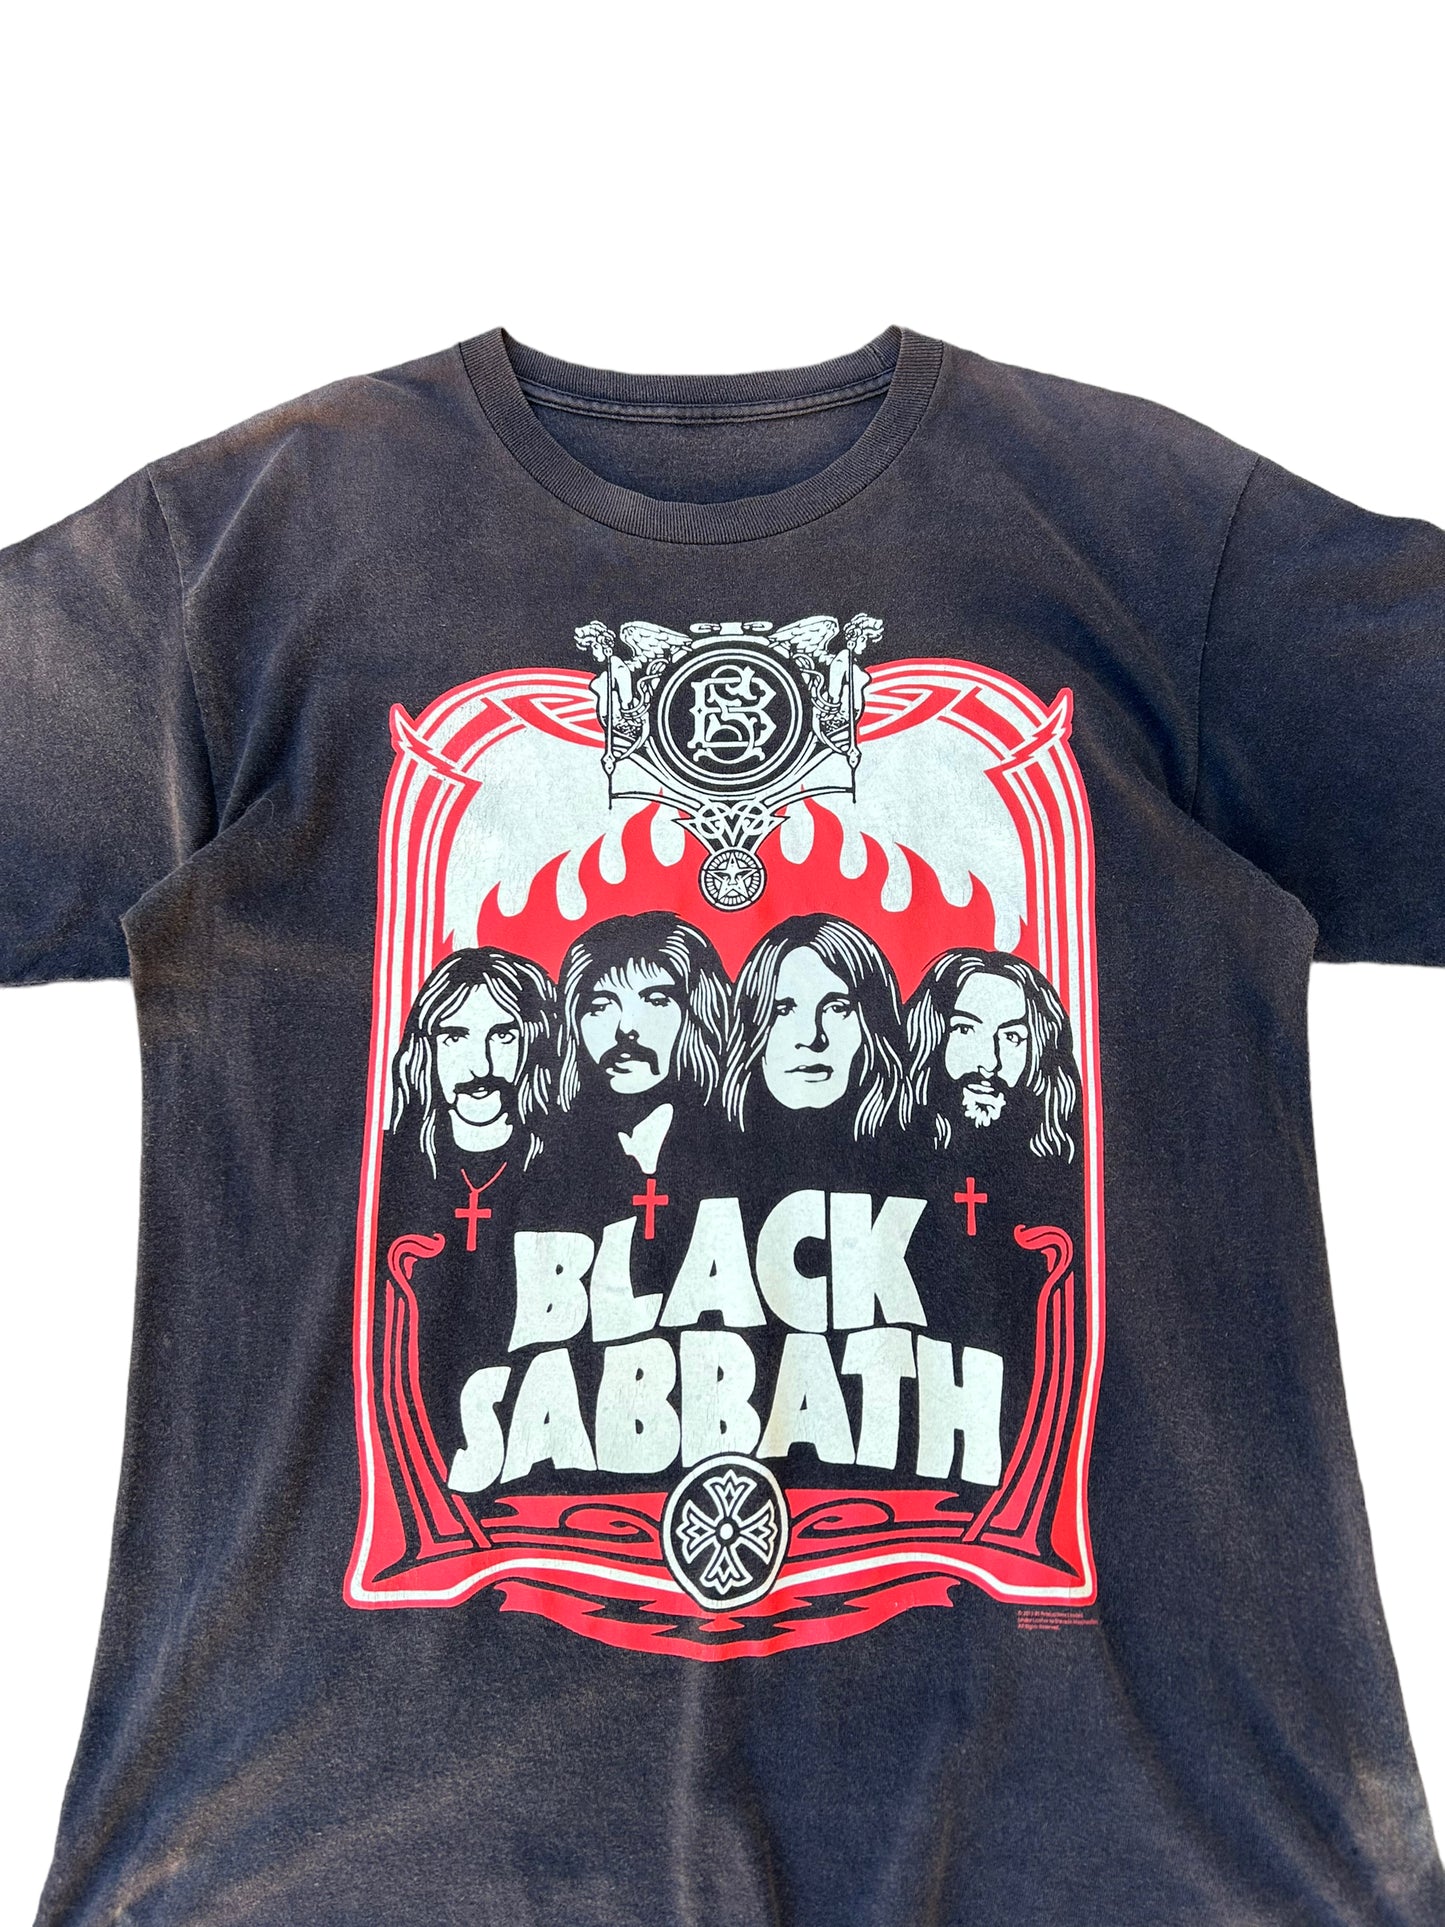 Black Sabbath Tee